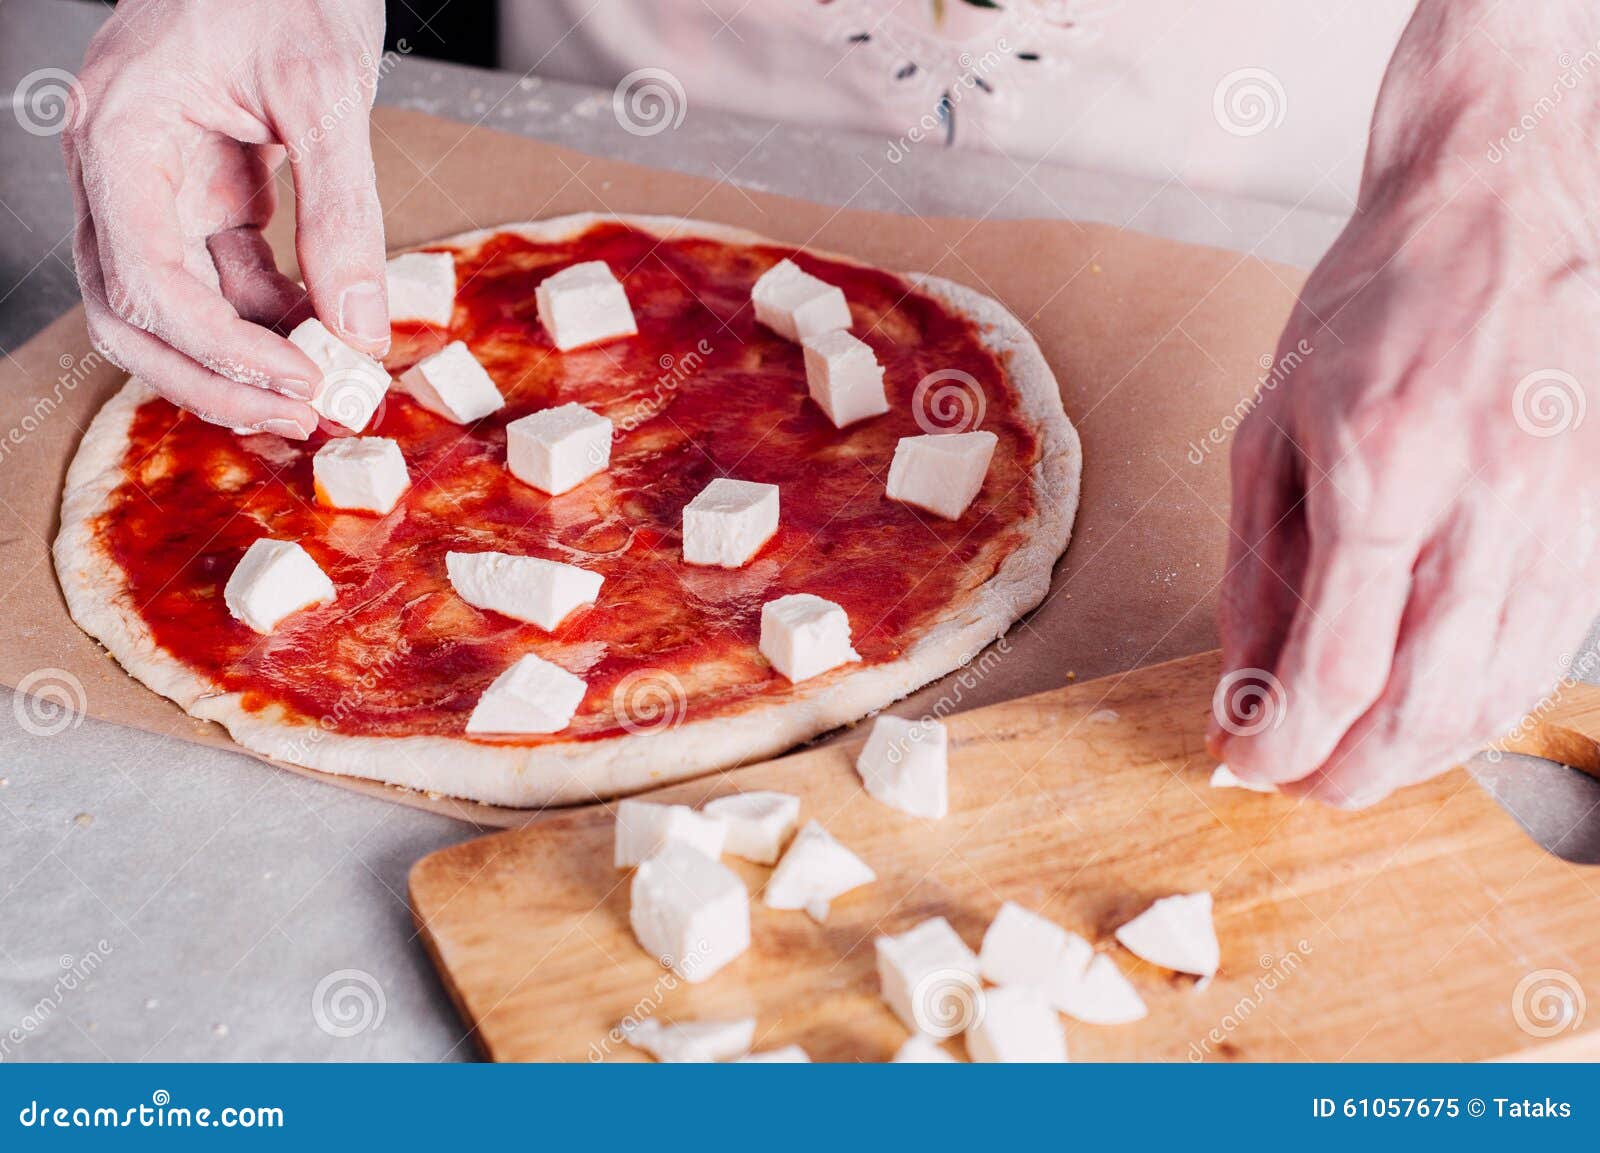 что ложат на тесто в пицце фото 64